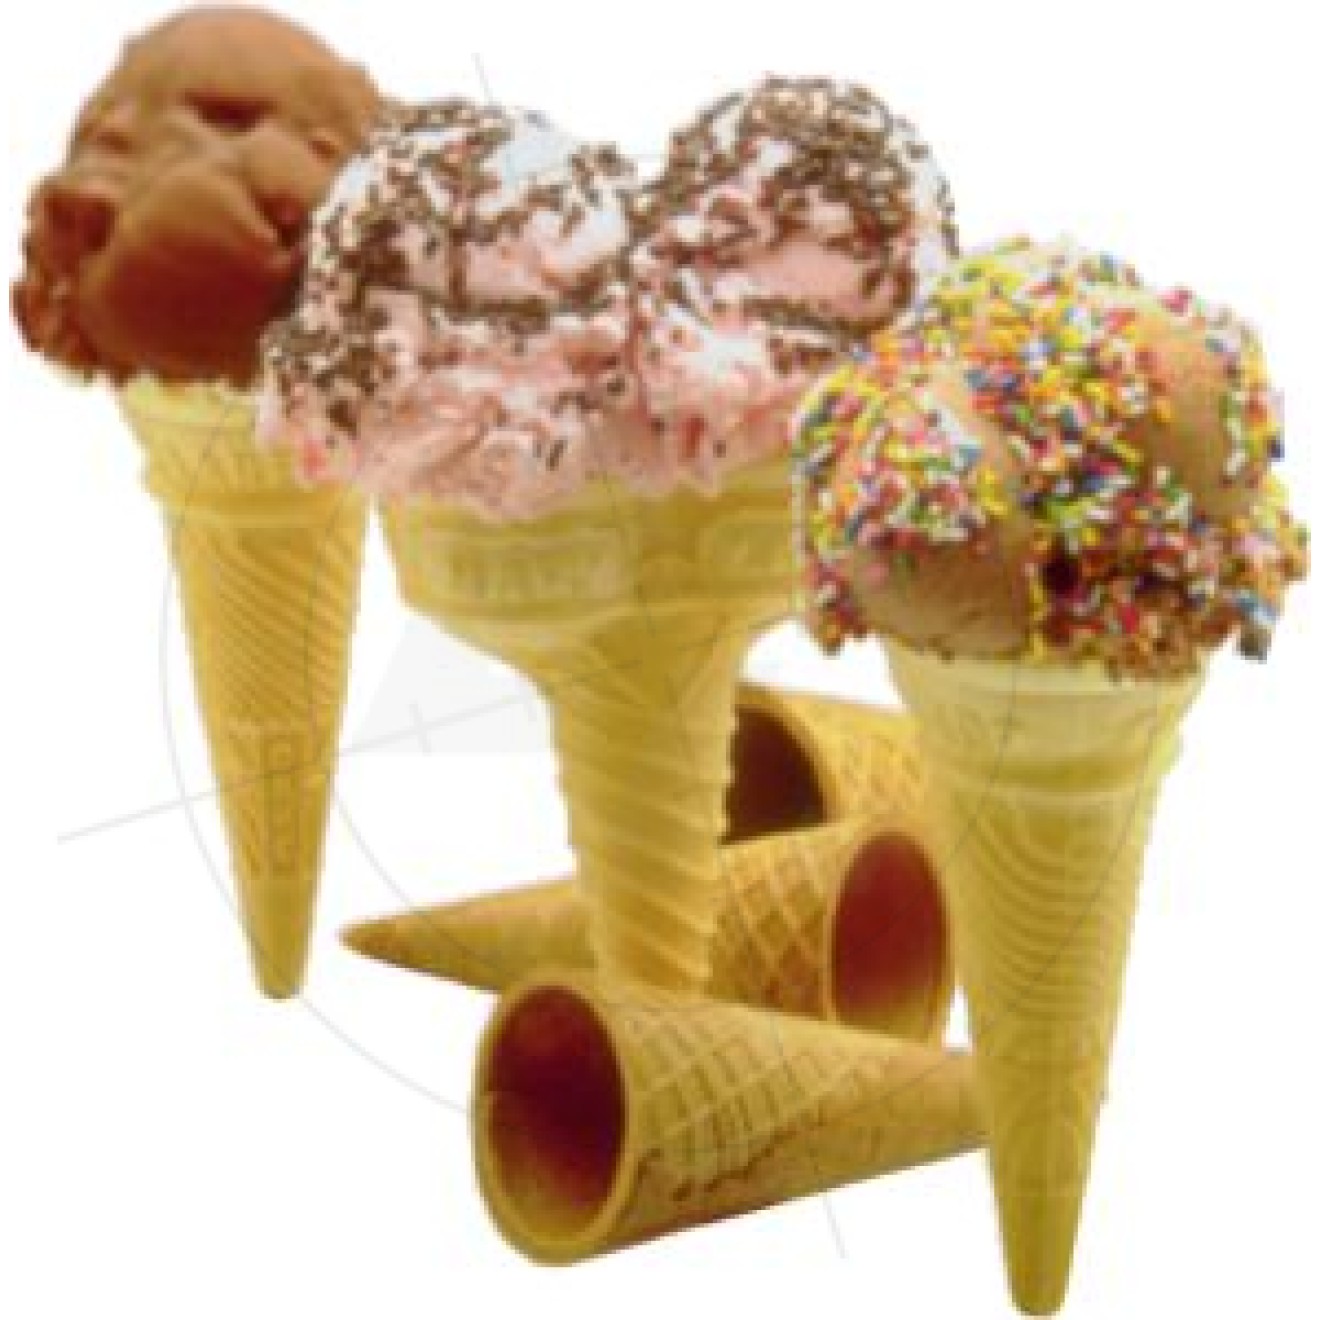 Sticker ice cream cones